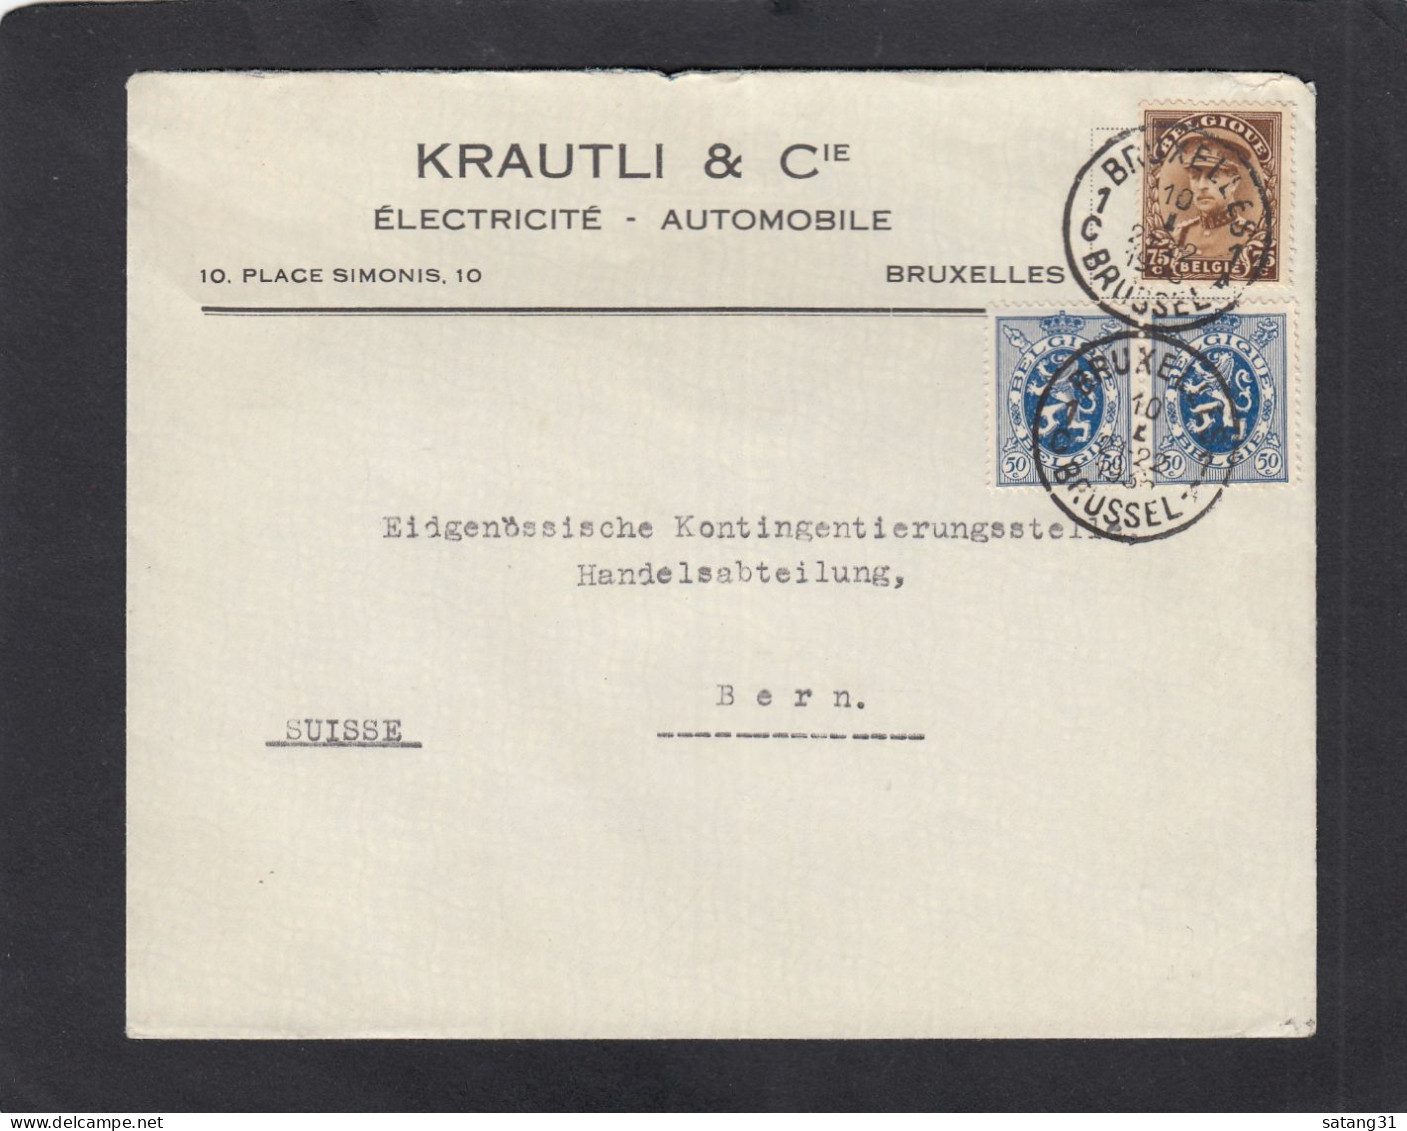 KRATLI & CIE.,ELECTRICITE - AUTOMOBILE, BRUXELLES.LETTRE POUR BERN,1935. - Brieven En Documenten